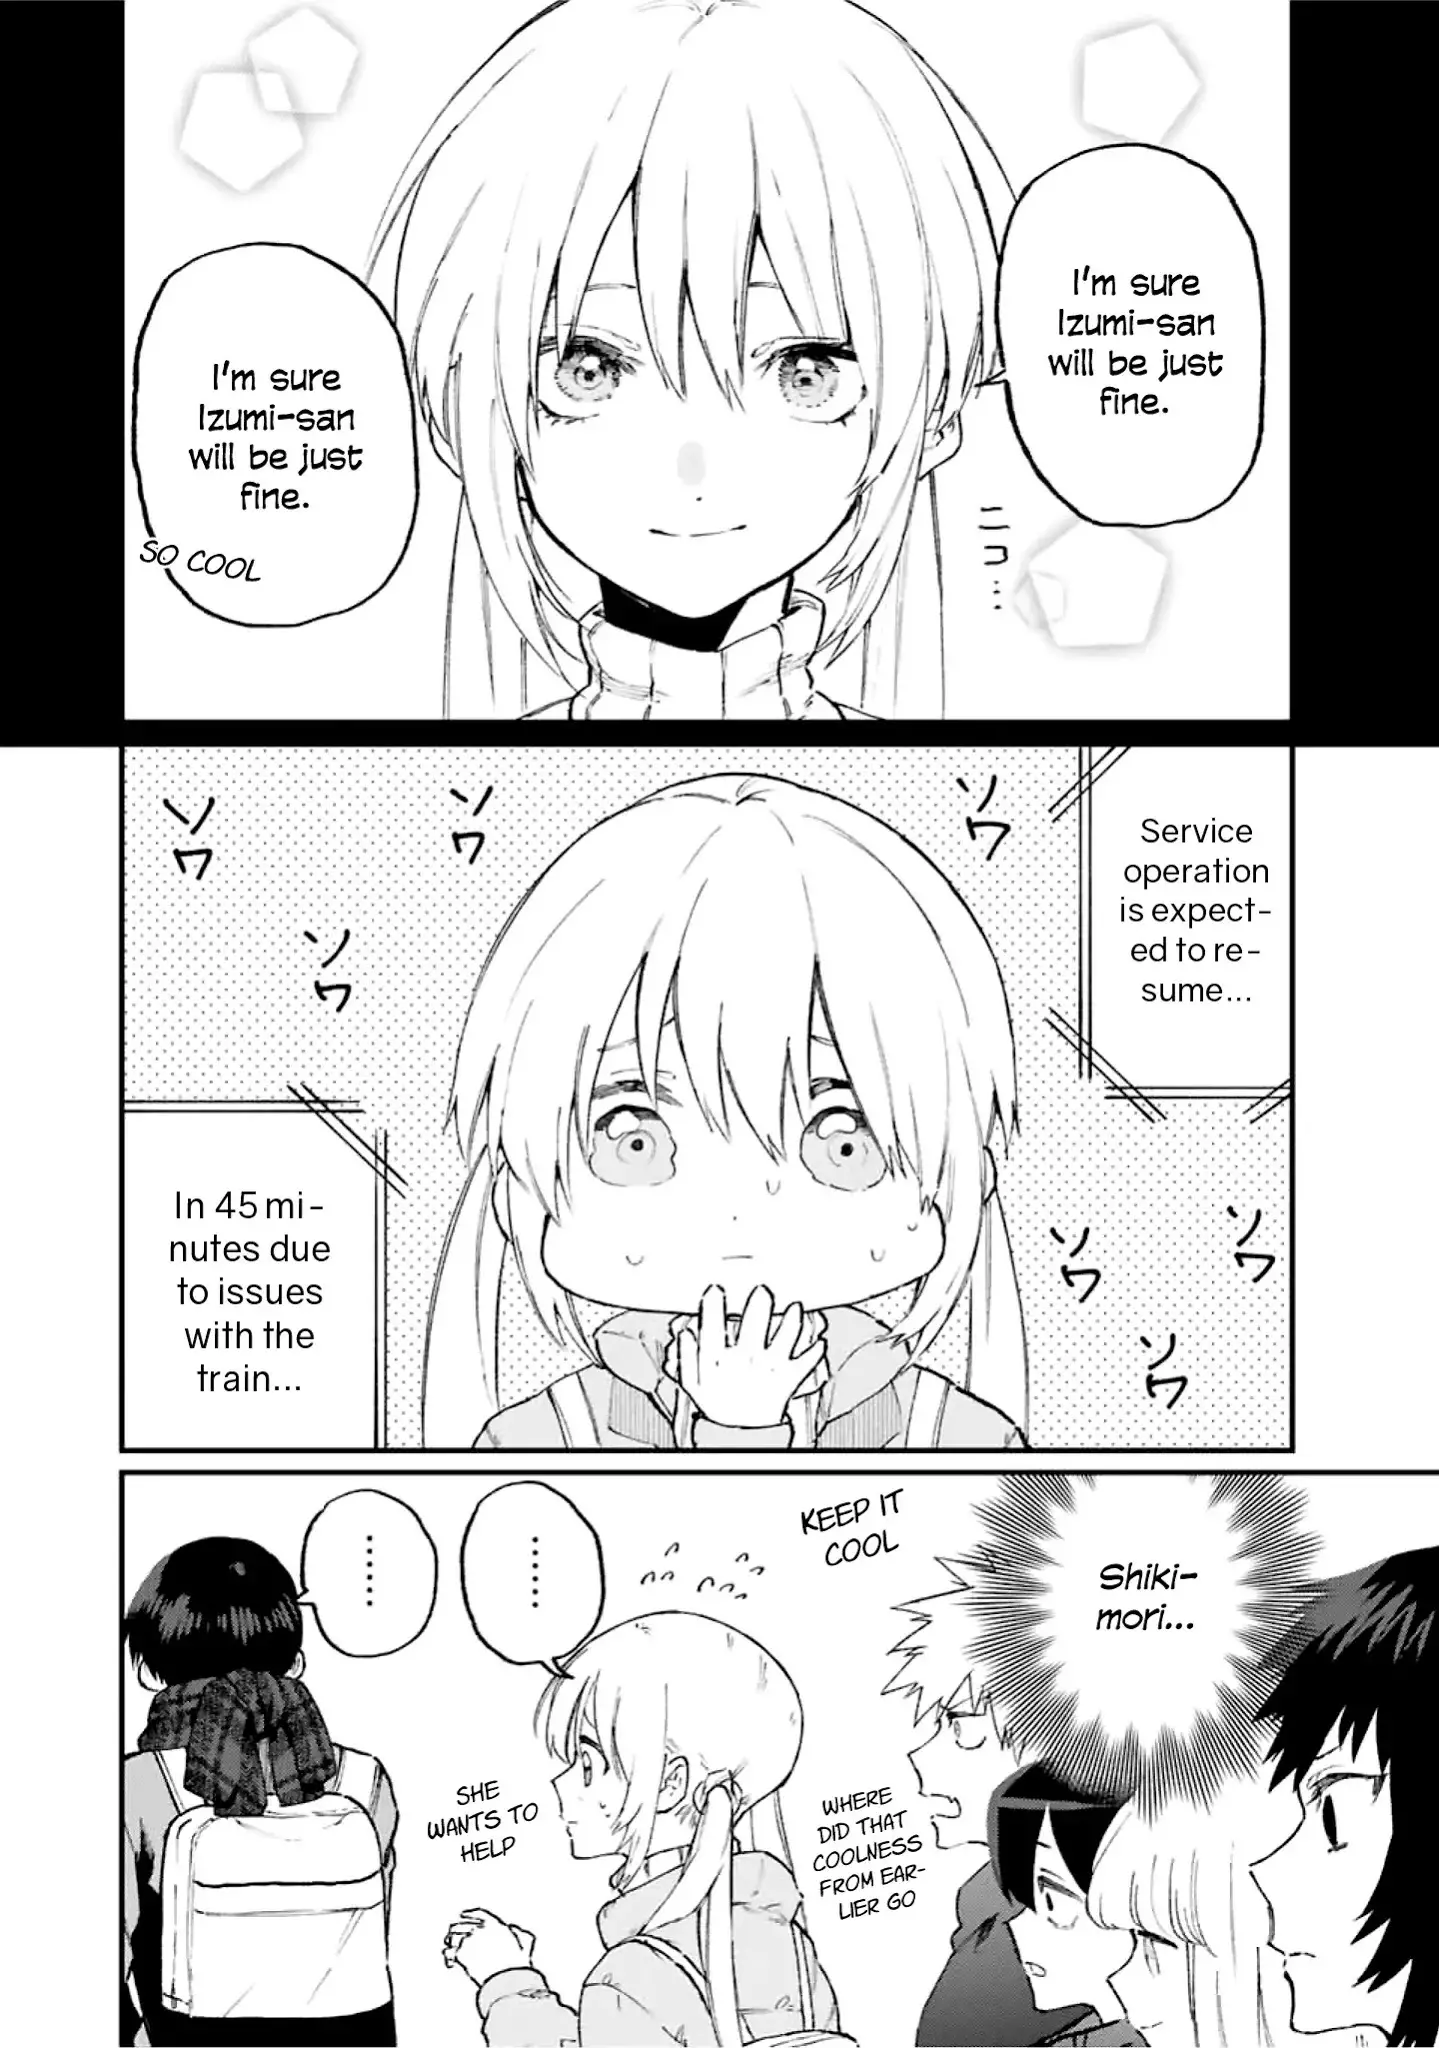 Shikimori's Not Just A Cutie - 94 page 3